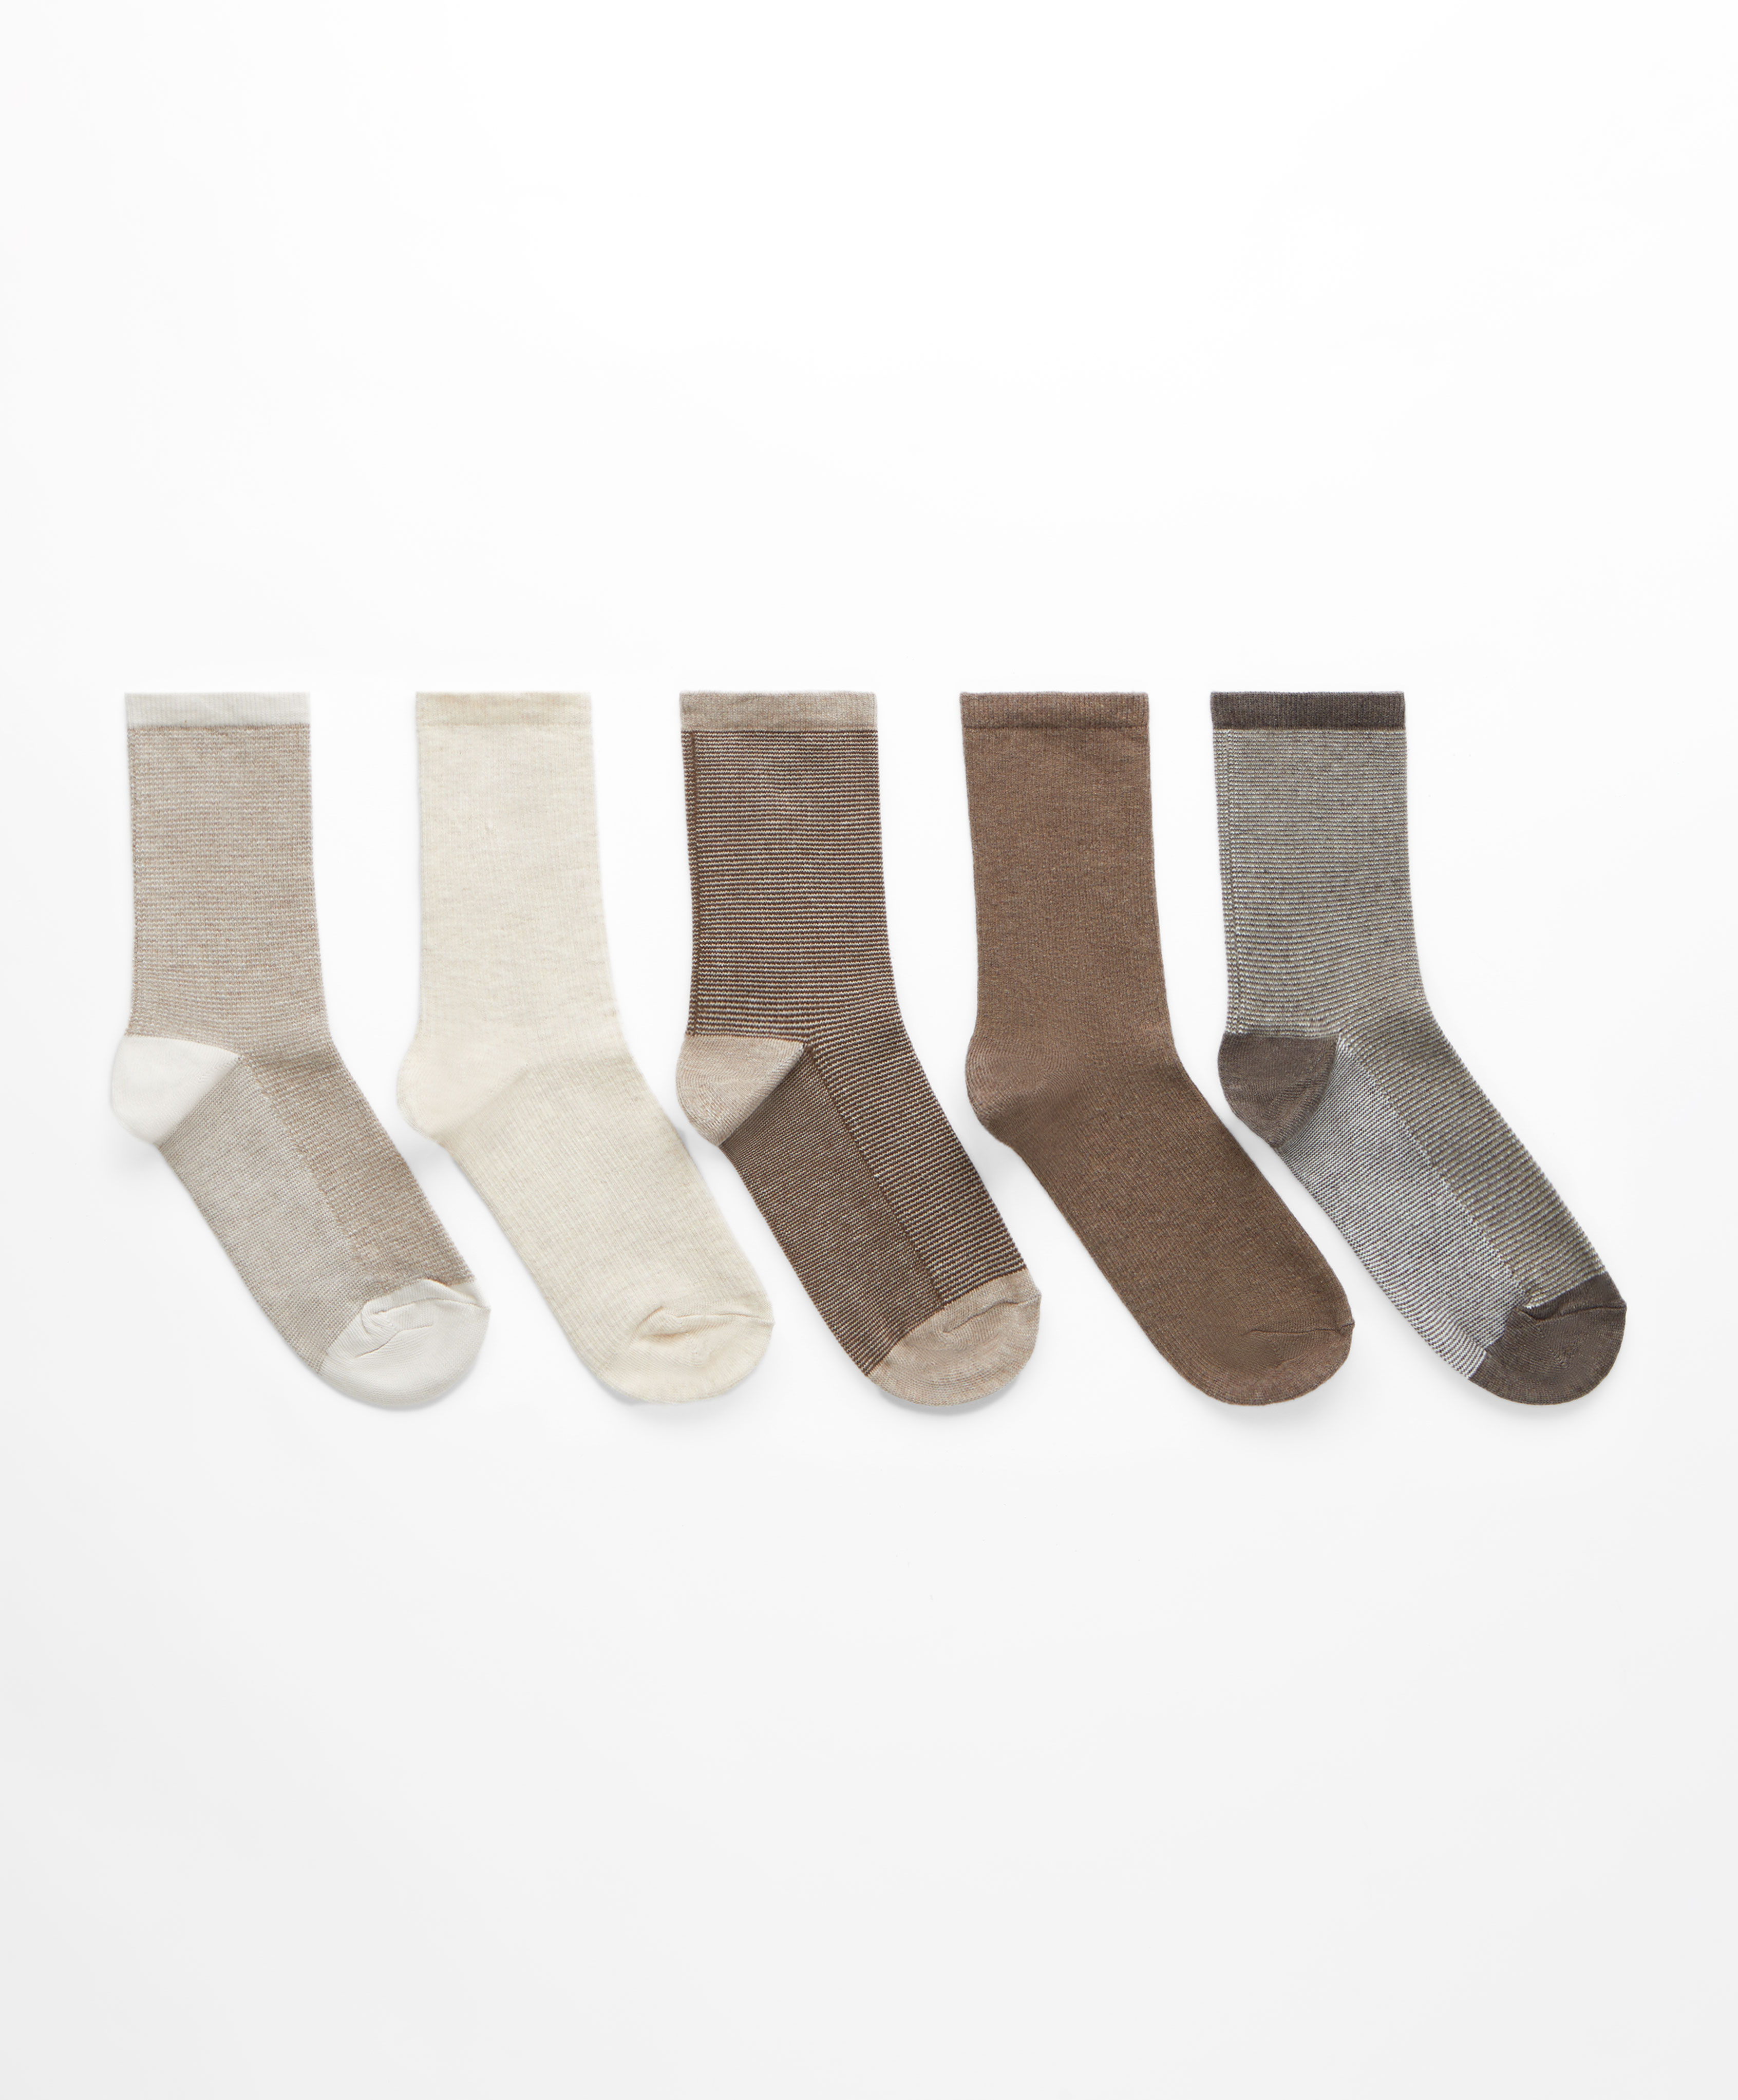 5 pares de calcetines classic estructura fantasía